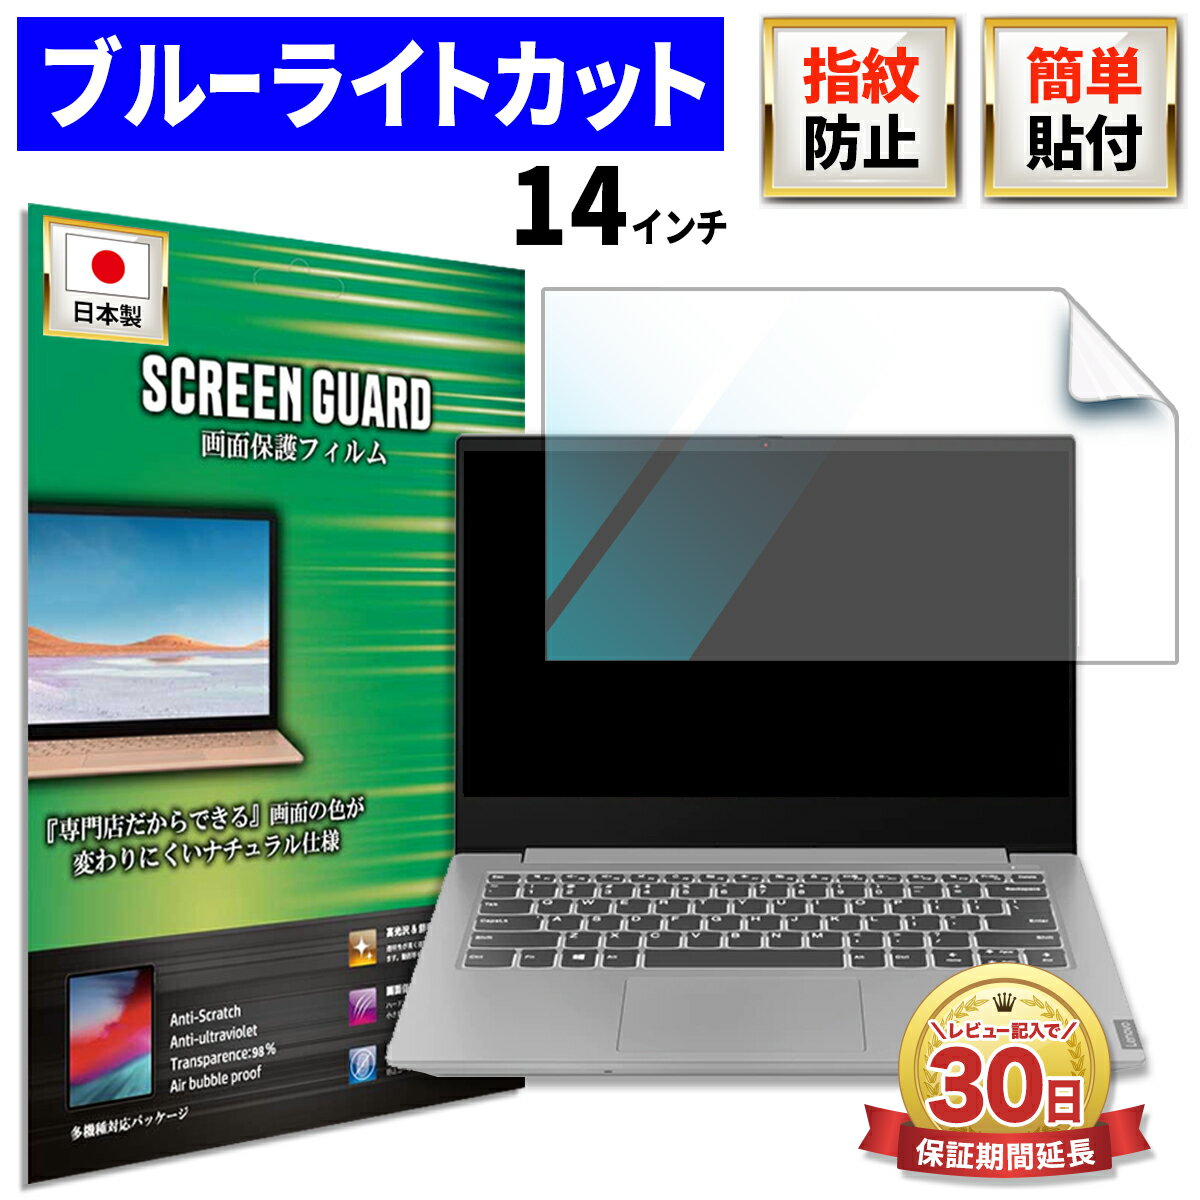 Lenovo IdeaPad Slim 350 14 インチ ノート 